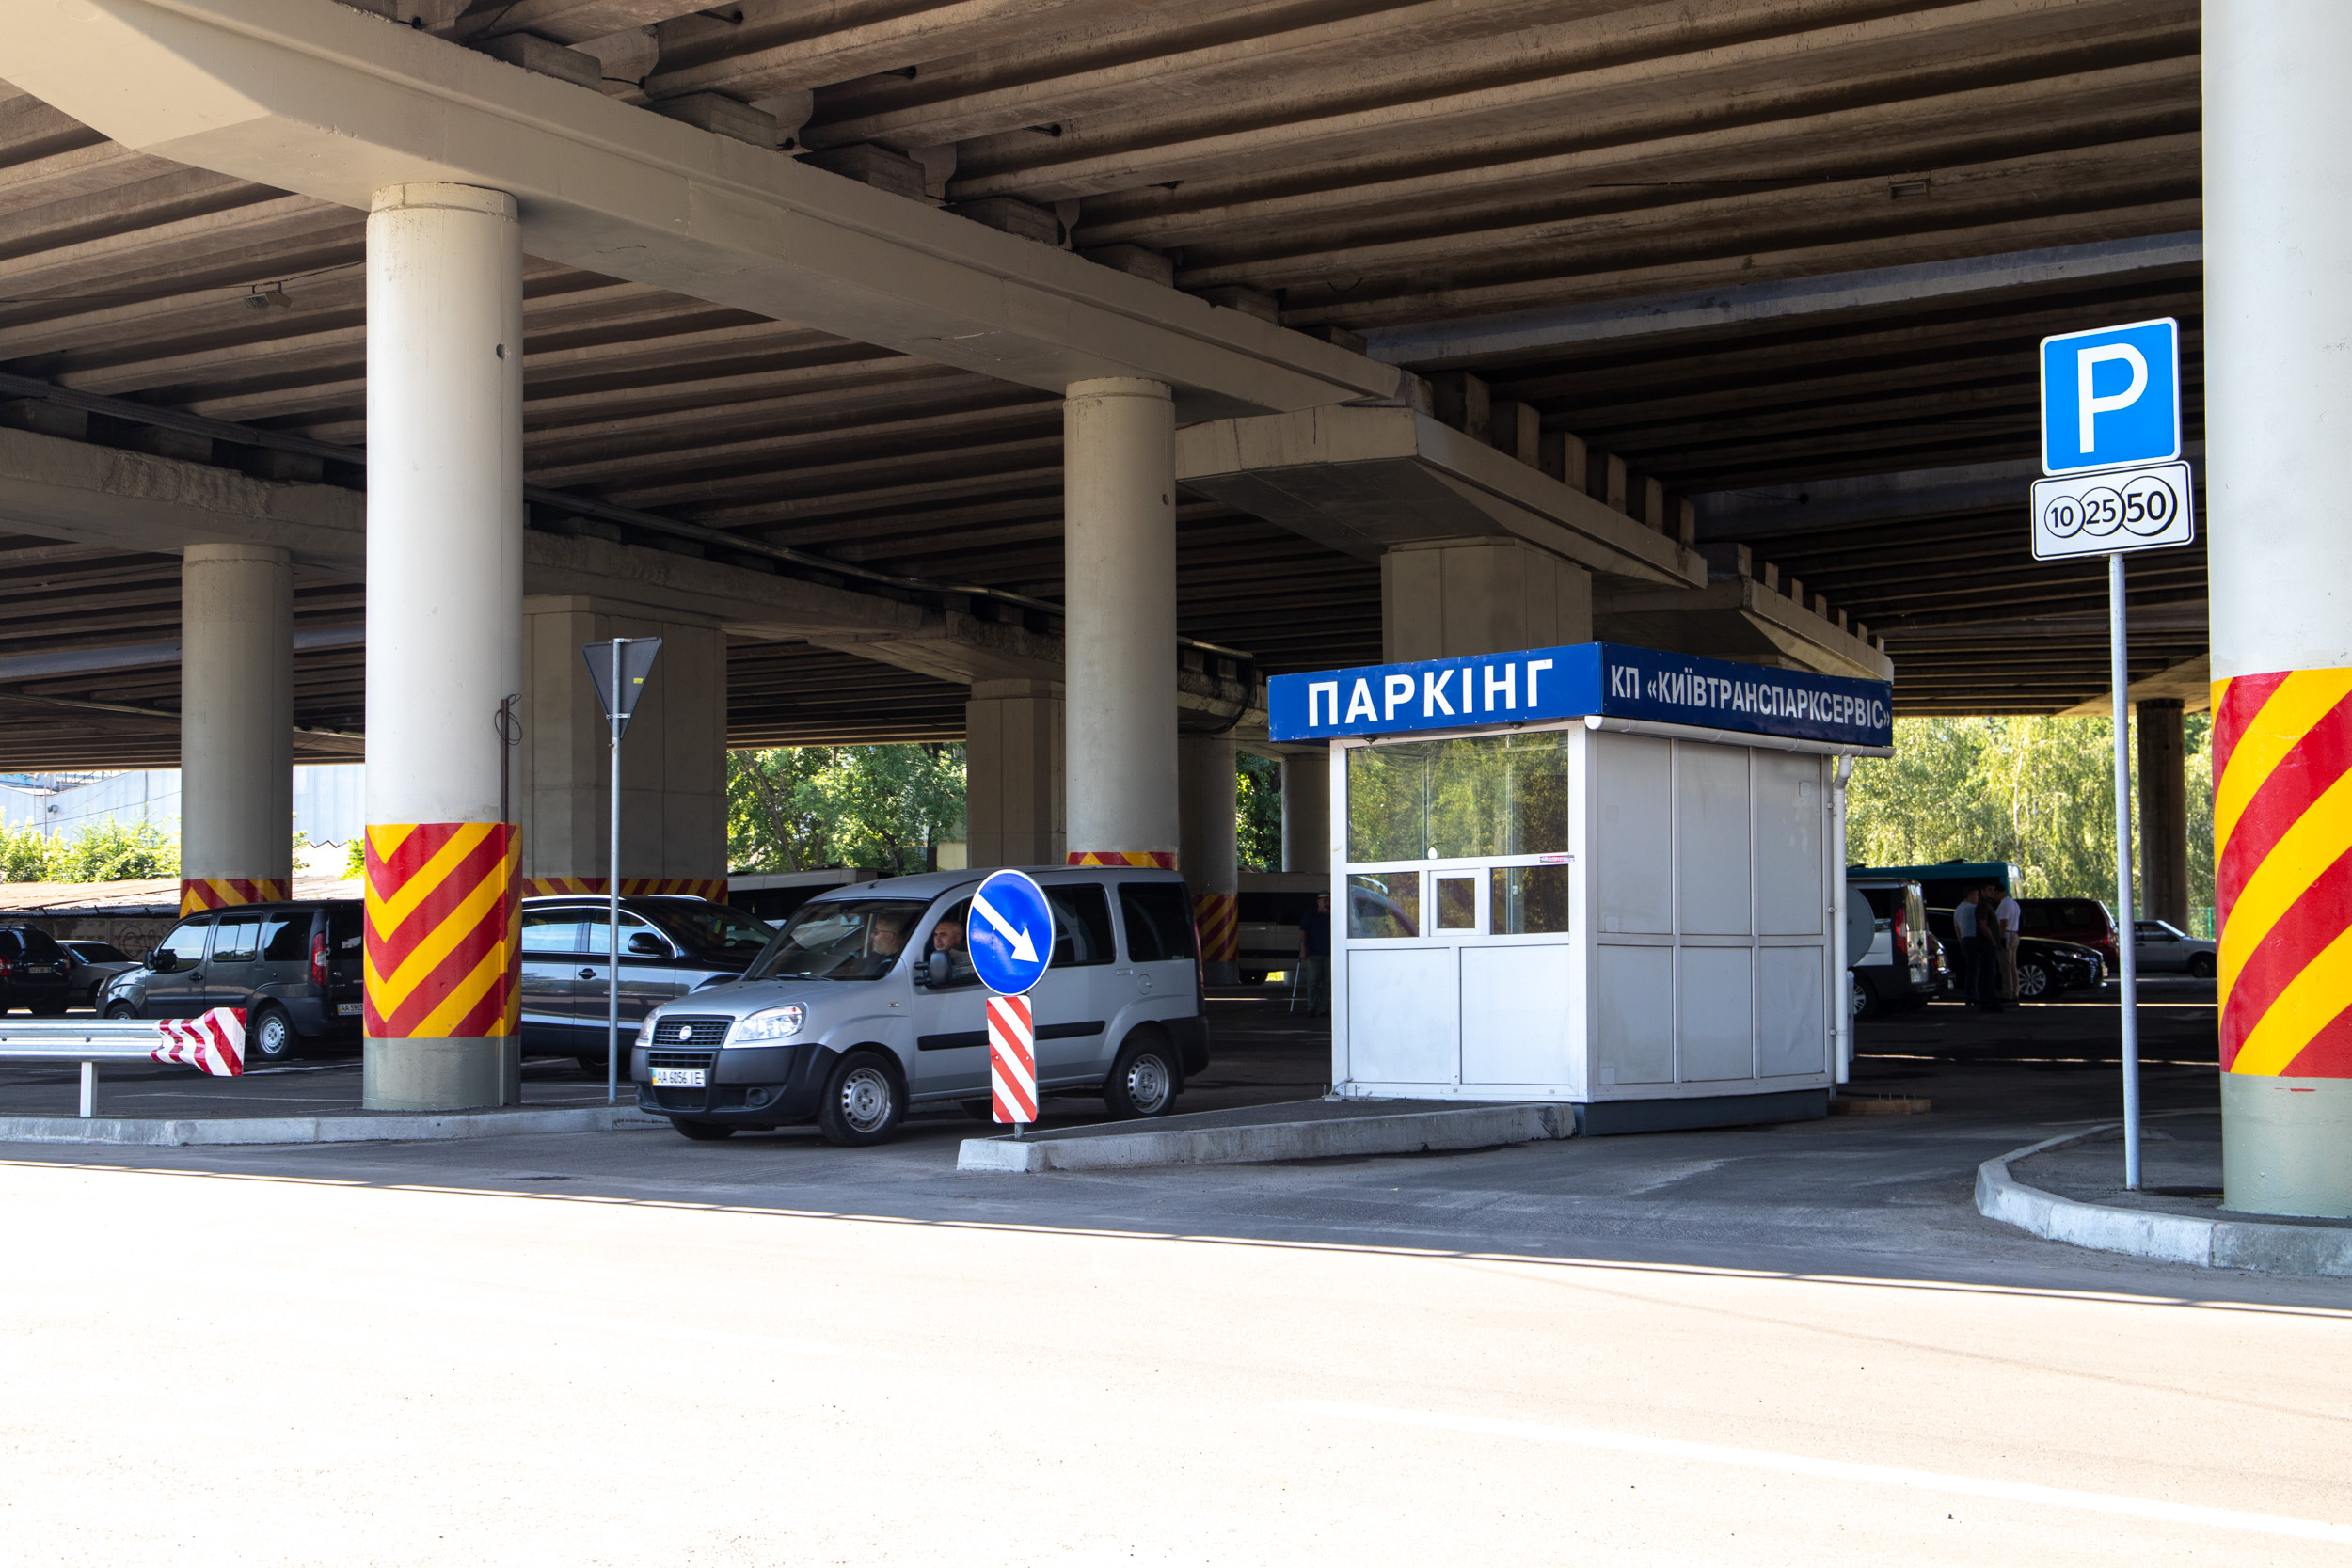 Около метро “Выдубичи” в Киеве заработал первый перехватывающий паркинг